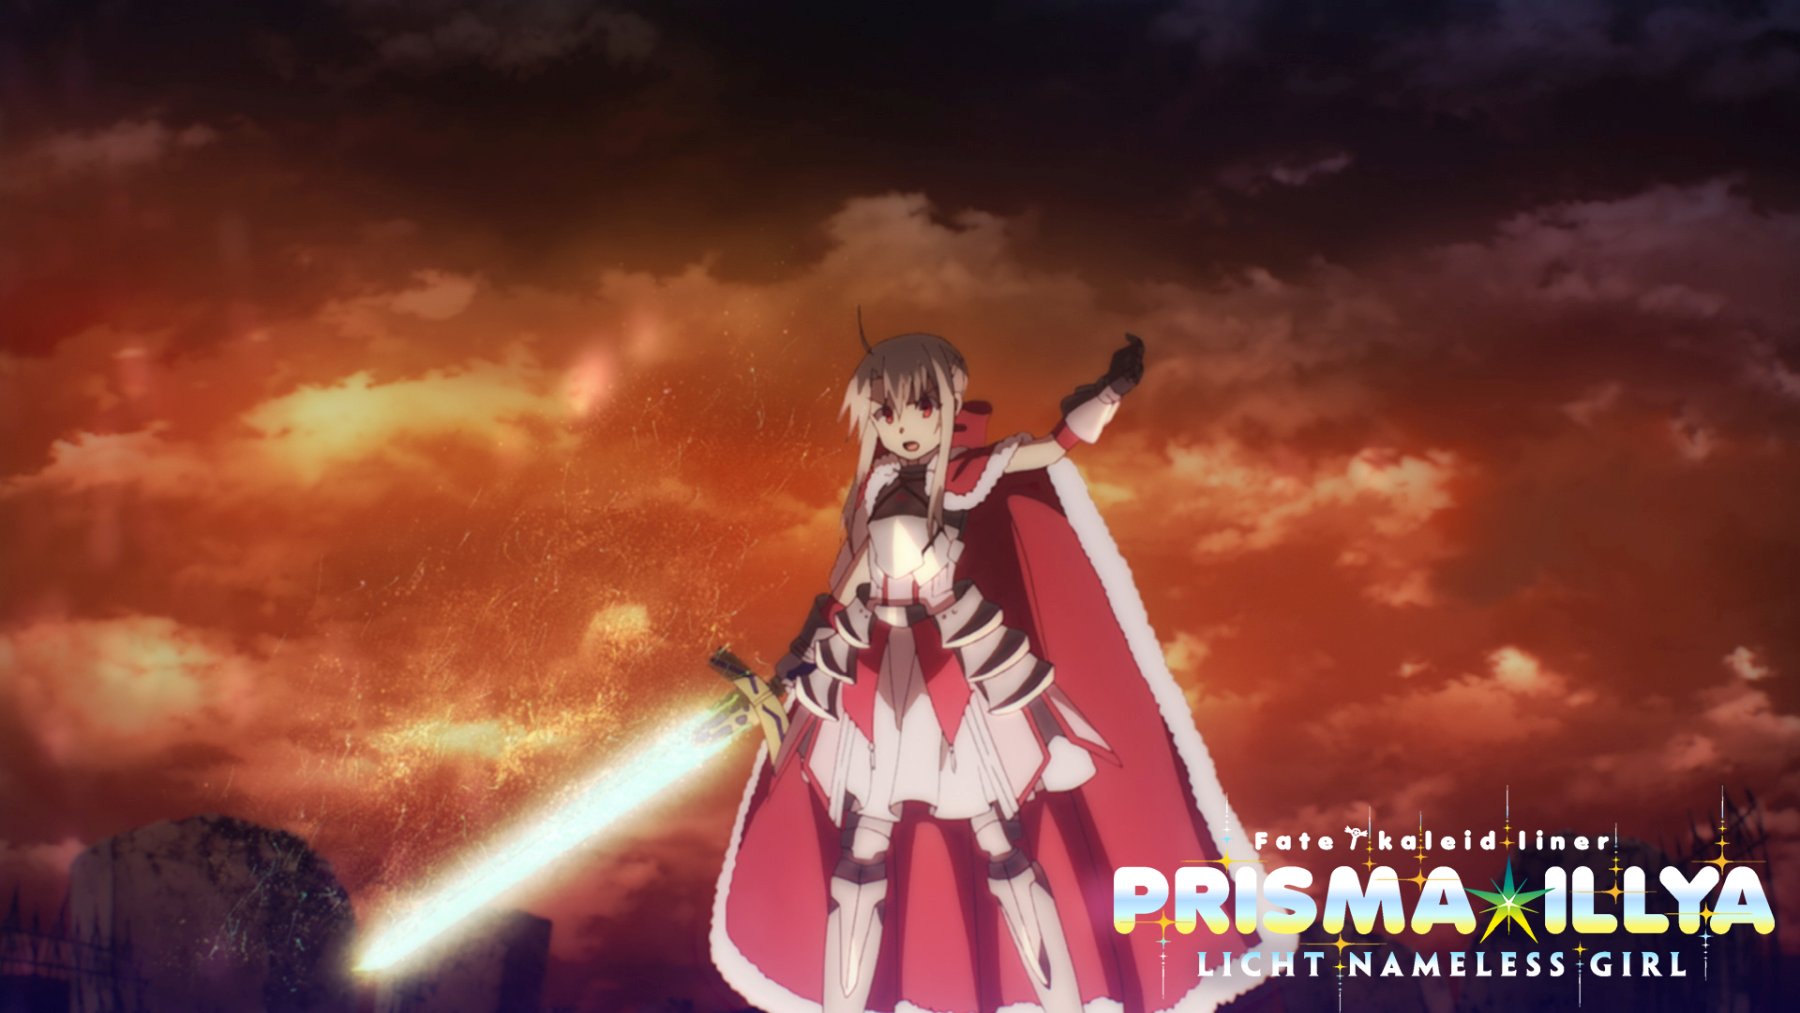 Fate/kaleid liner PRISMA ILLYA Licht Nameless Girl